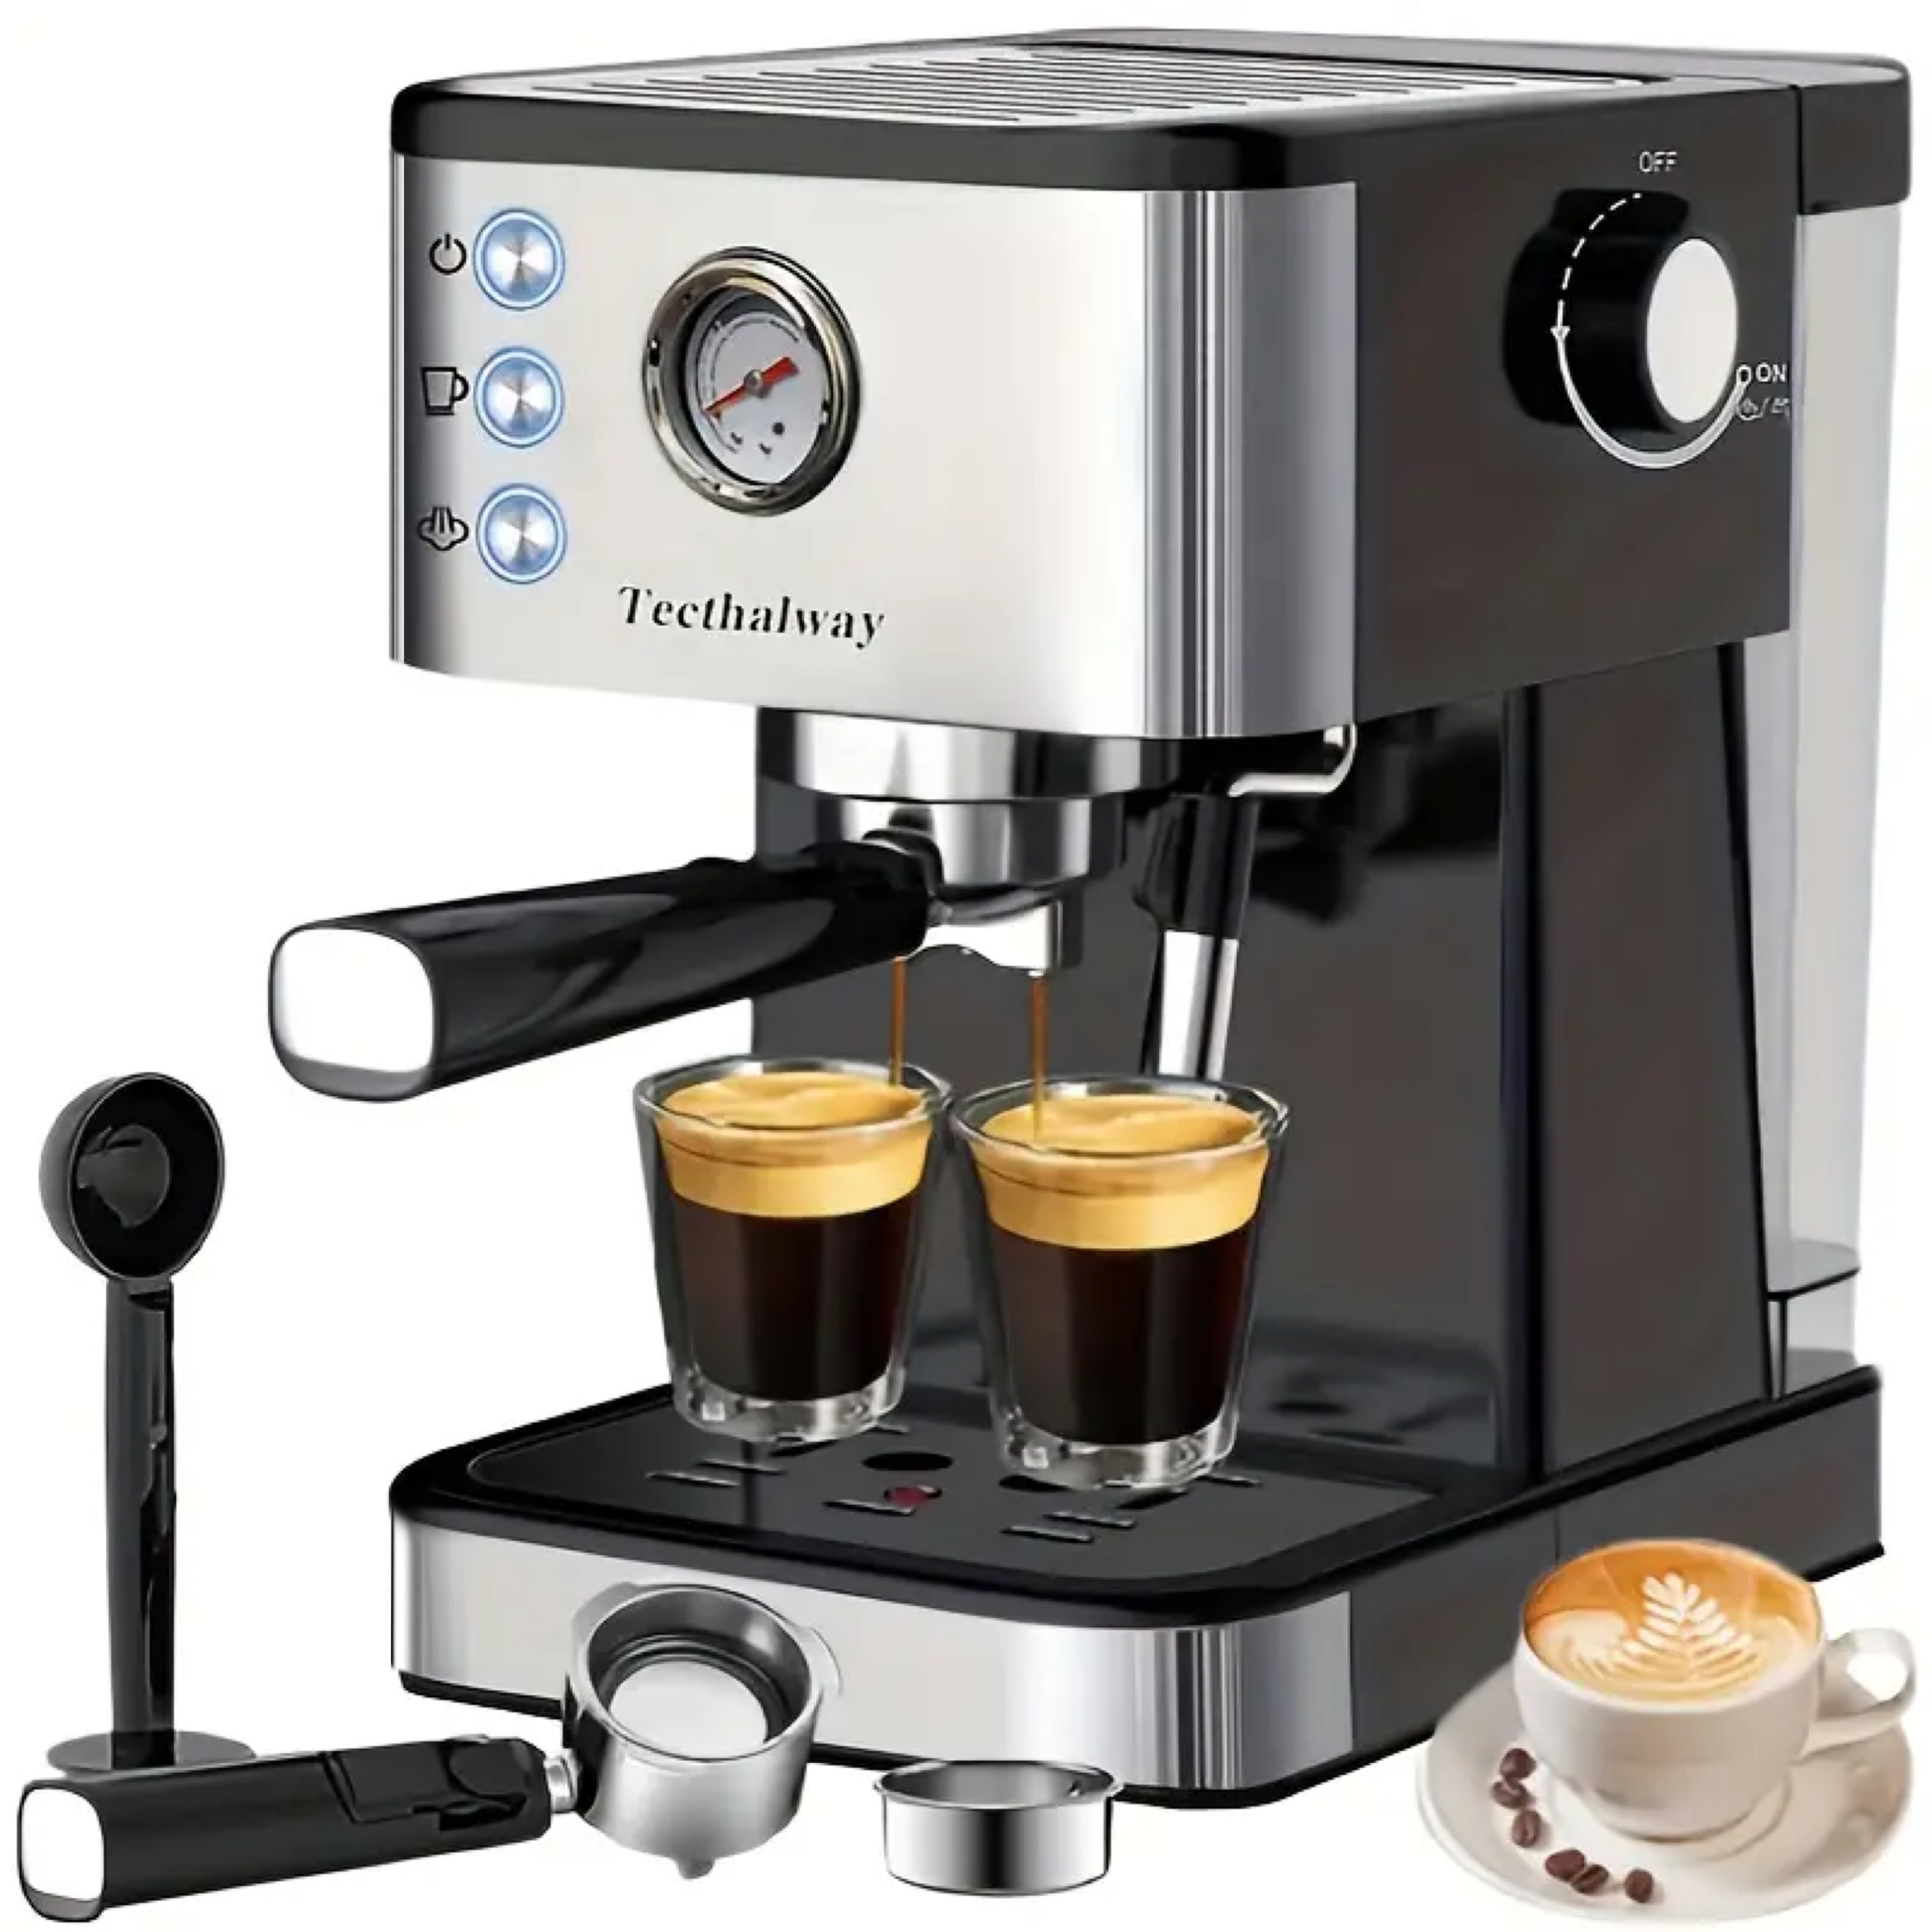 Bonsenkitchen Espresso Machine 20 Bar Coffee